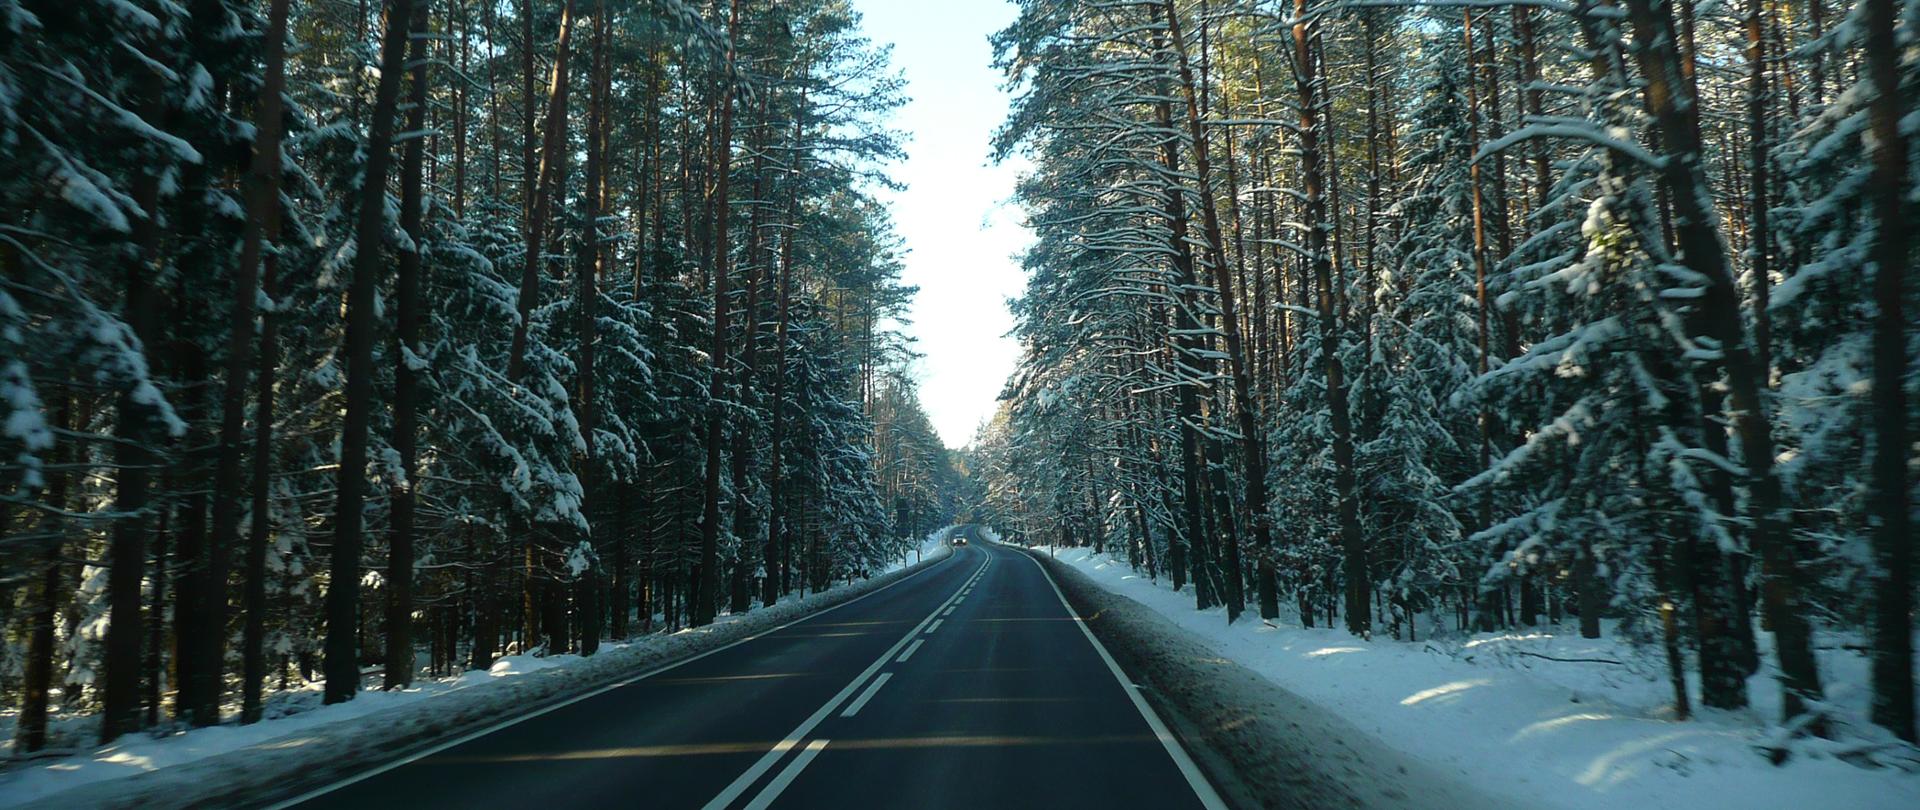 Odśnieżona droga biegnąca przez zimowy las. Z naprzeciwka jedzie samochód osobowy.